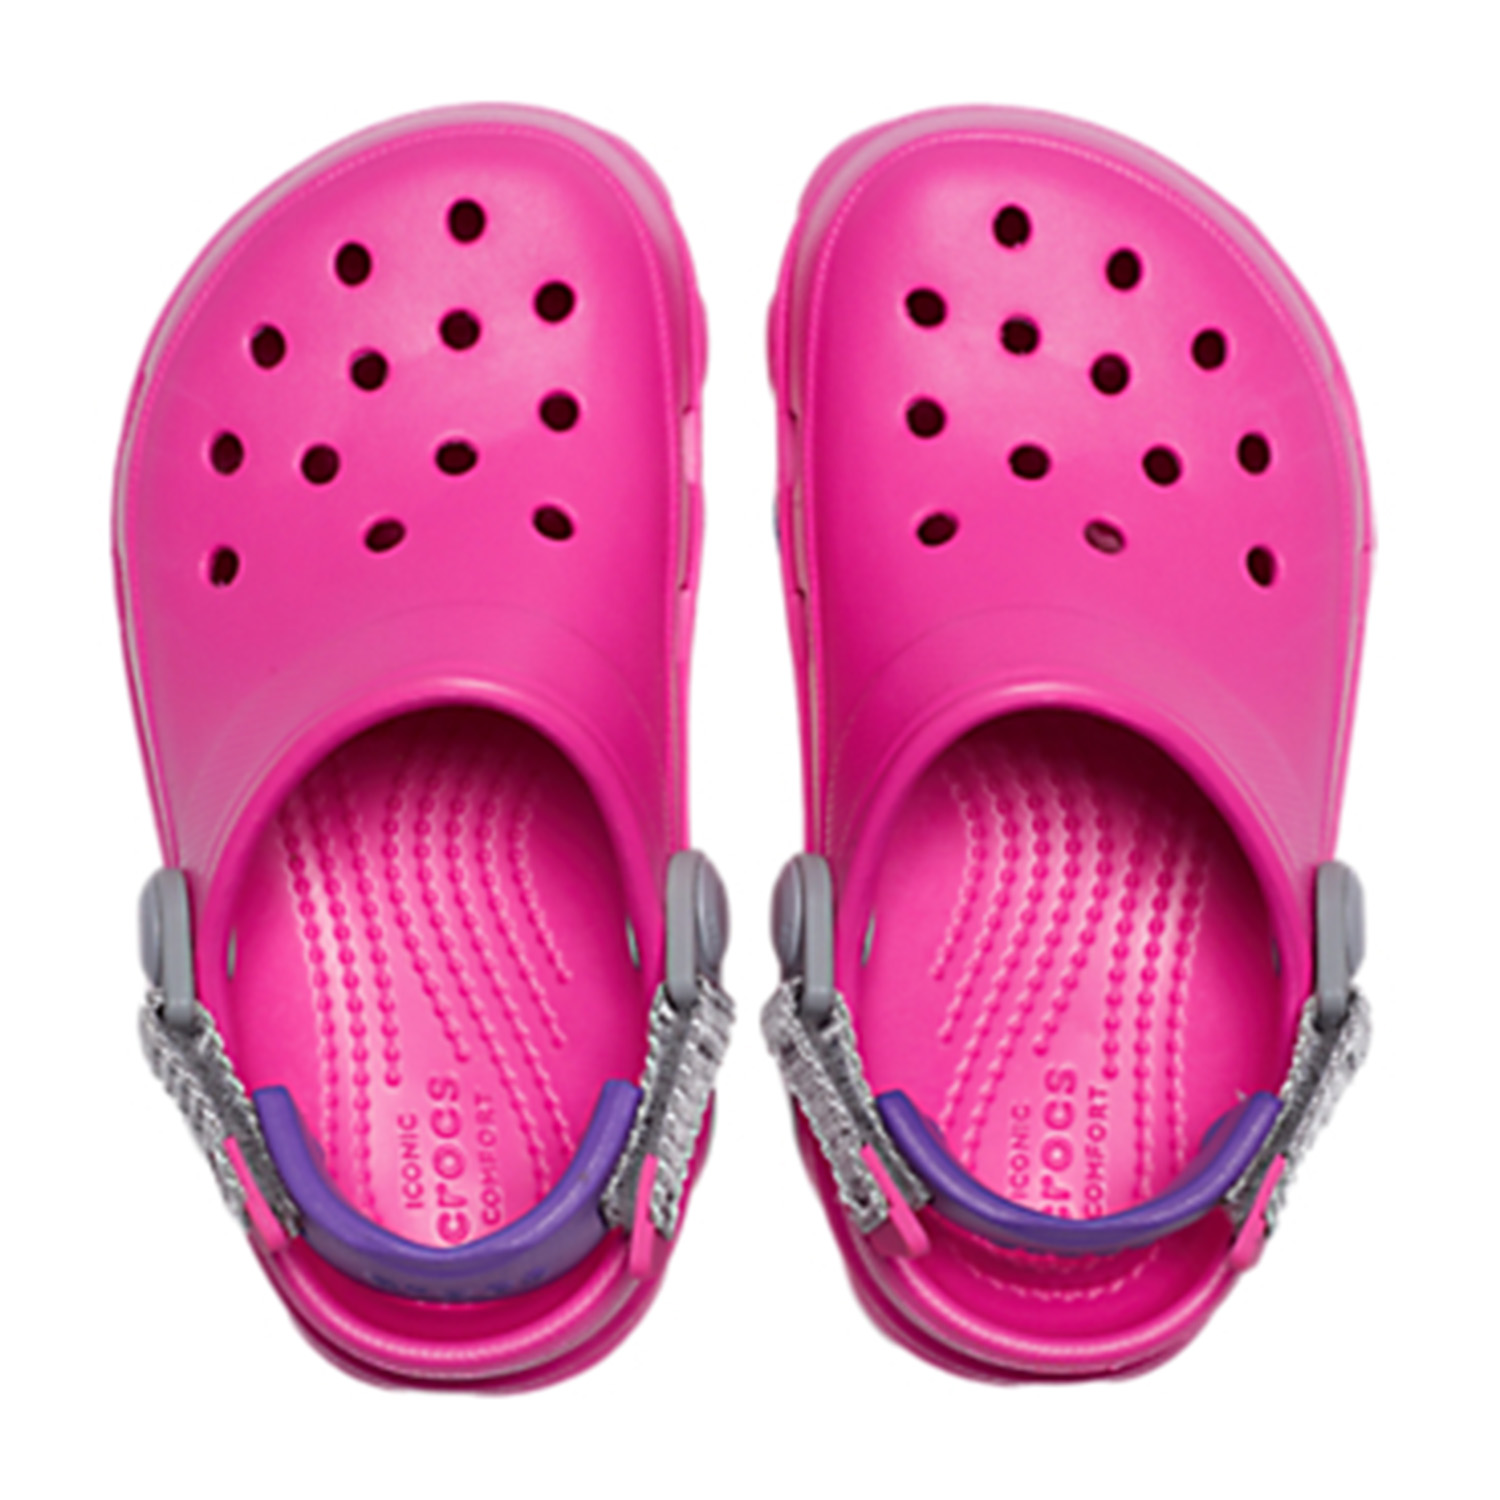 Crocs Classic All Terrain K Kinder Clog Roomy Fit 207011 Pink